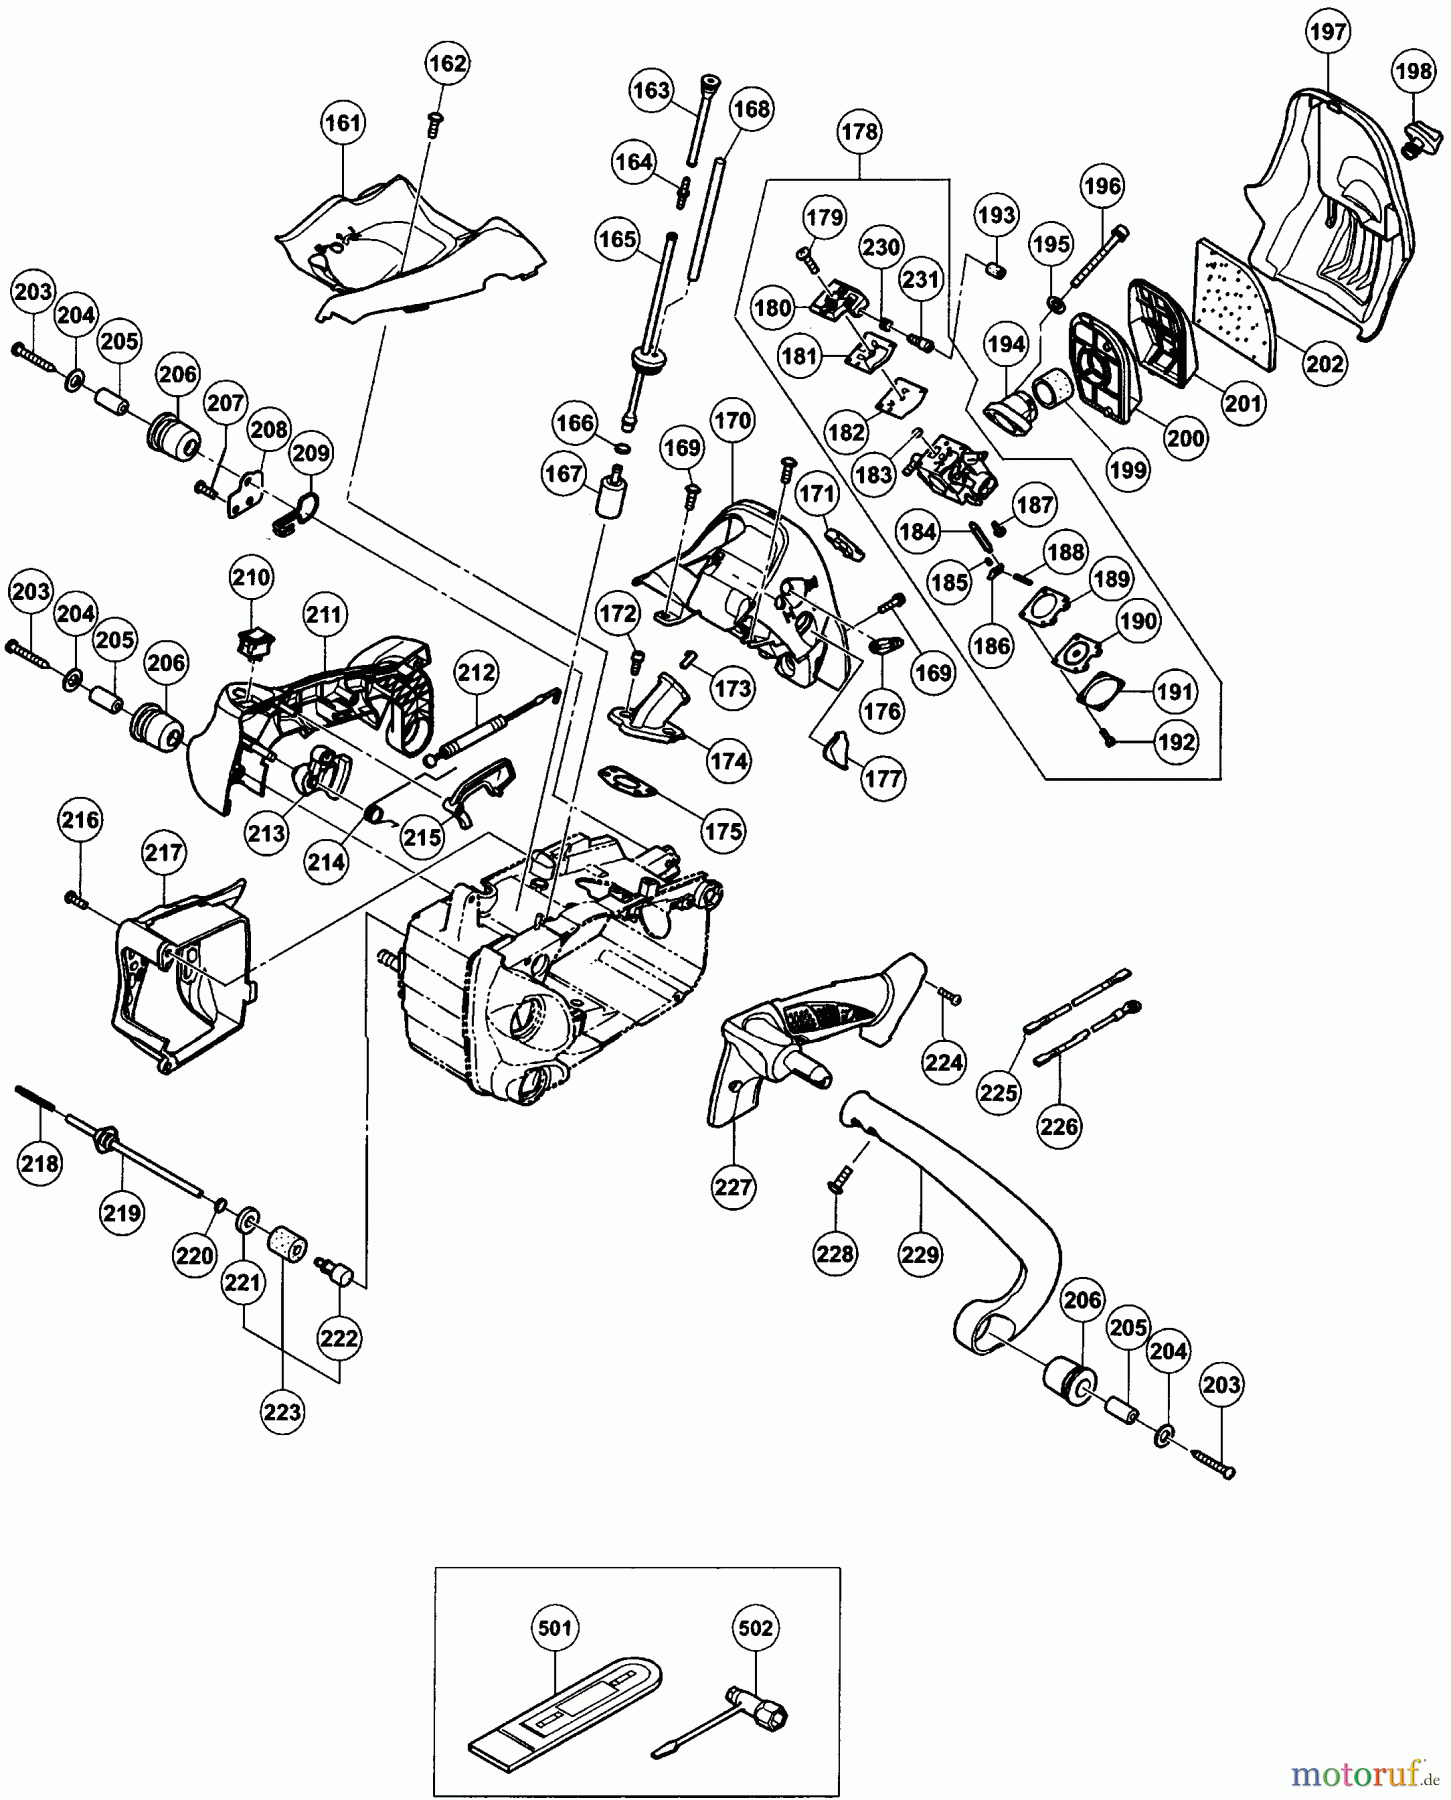  Tanaka Motorsägen TCS-3301PFS - Tanaka 32cc Chainsaw Fuel System & Air Box